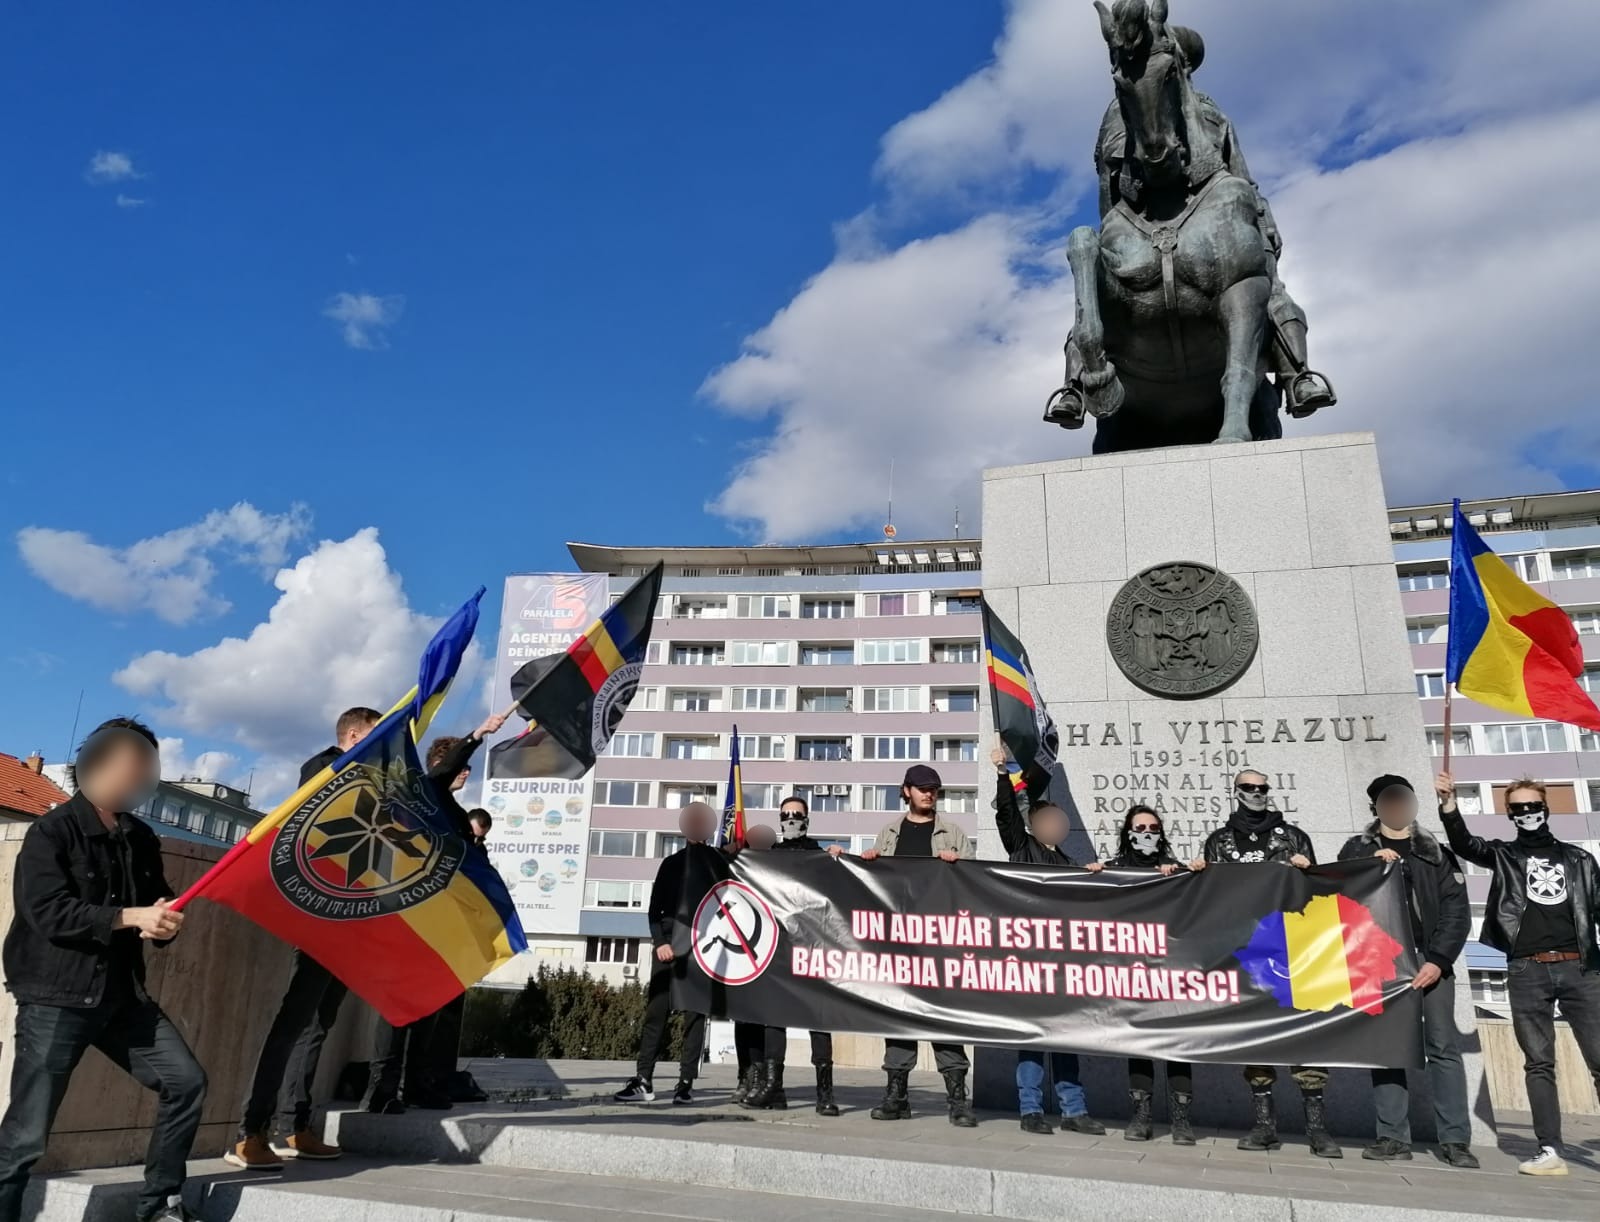 Tineretul Naționalist a sărbățorit Unirea Basarabiei cu România sărbătorită la Cluj